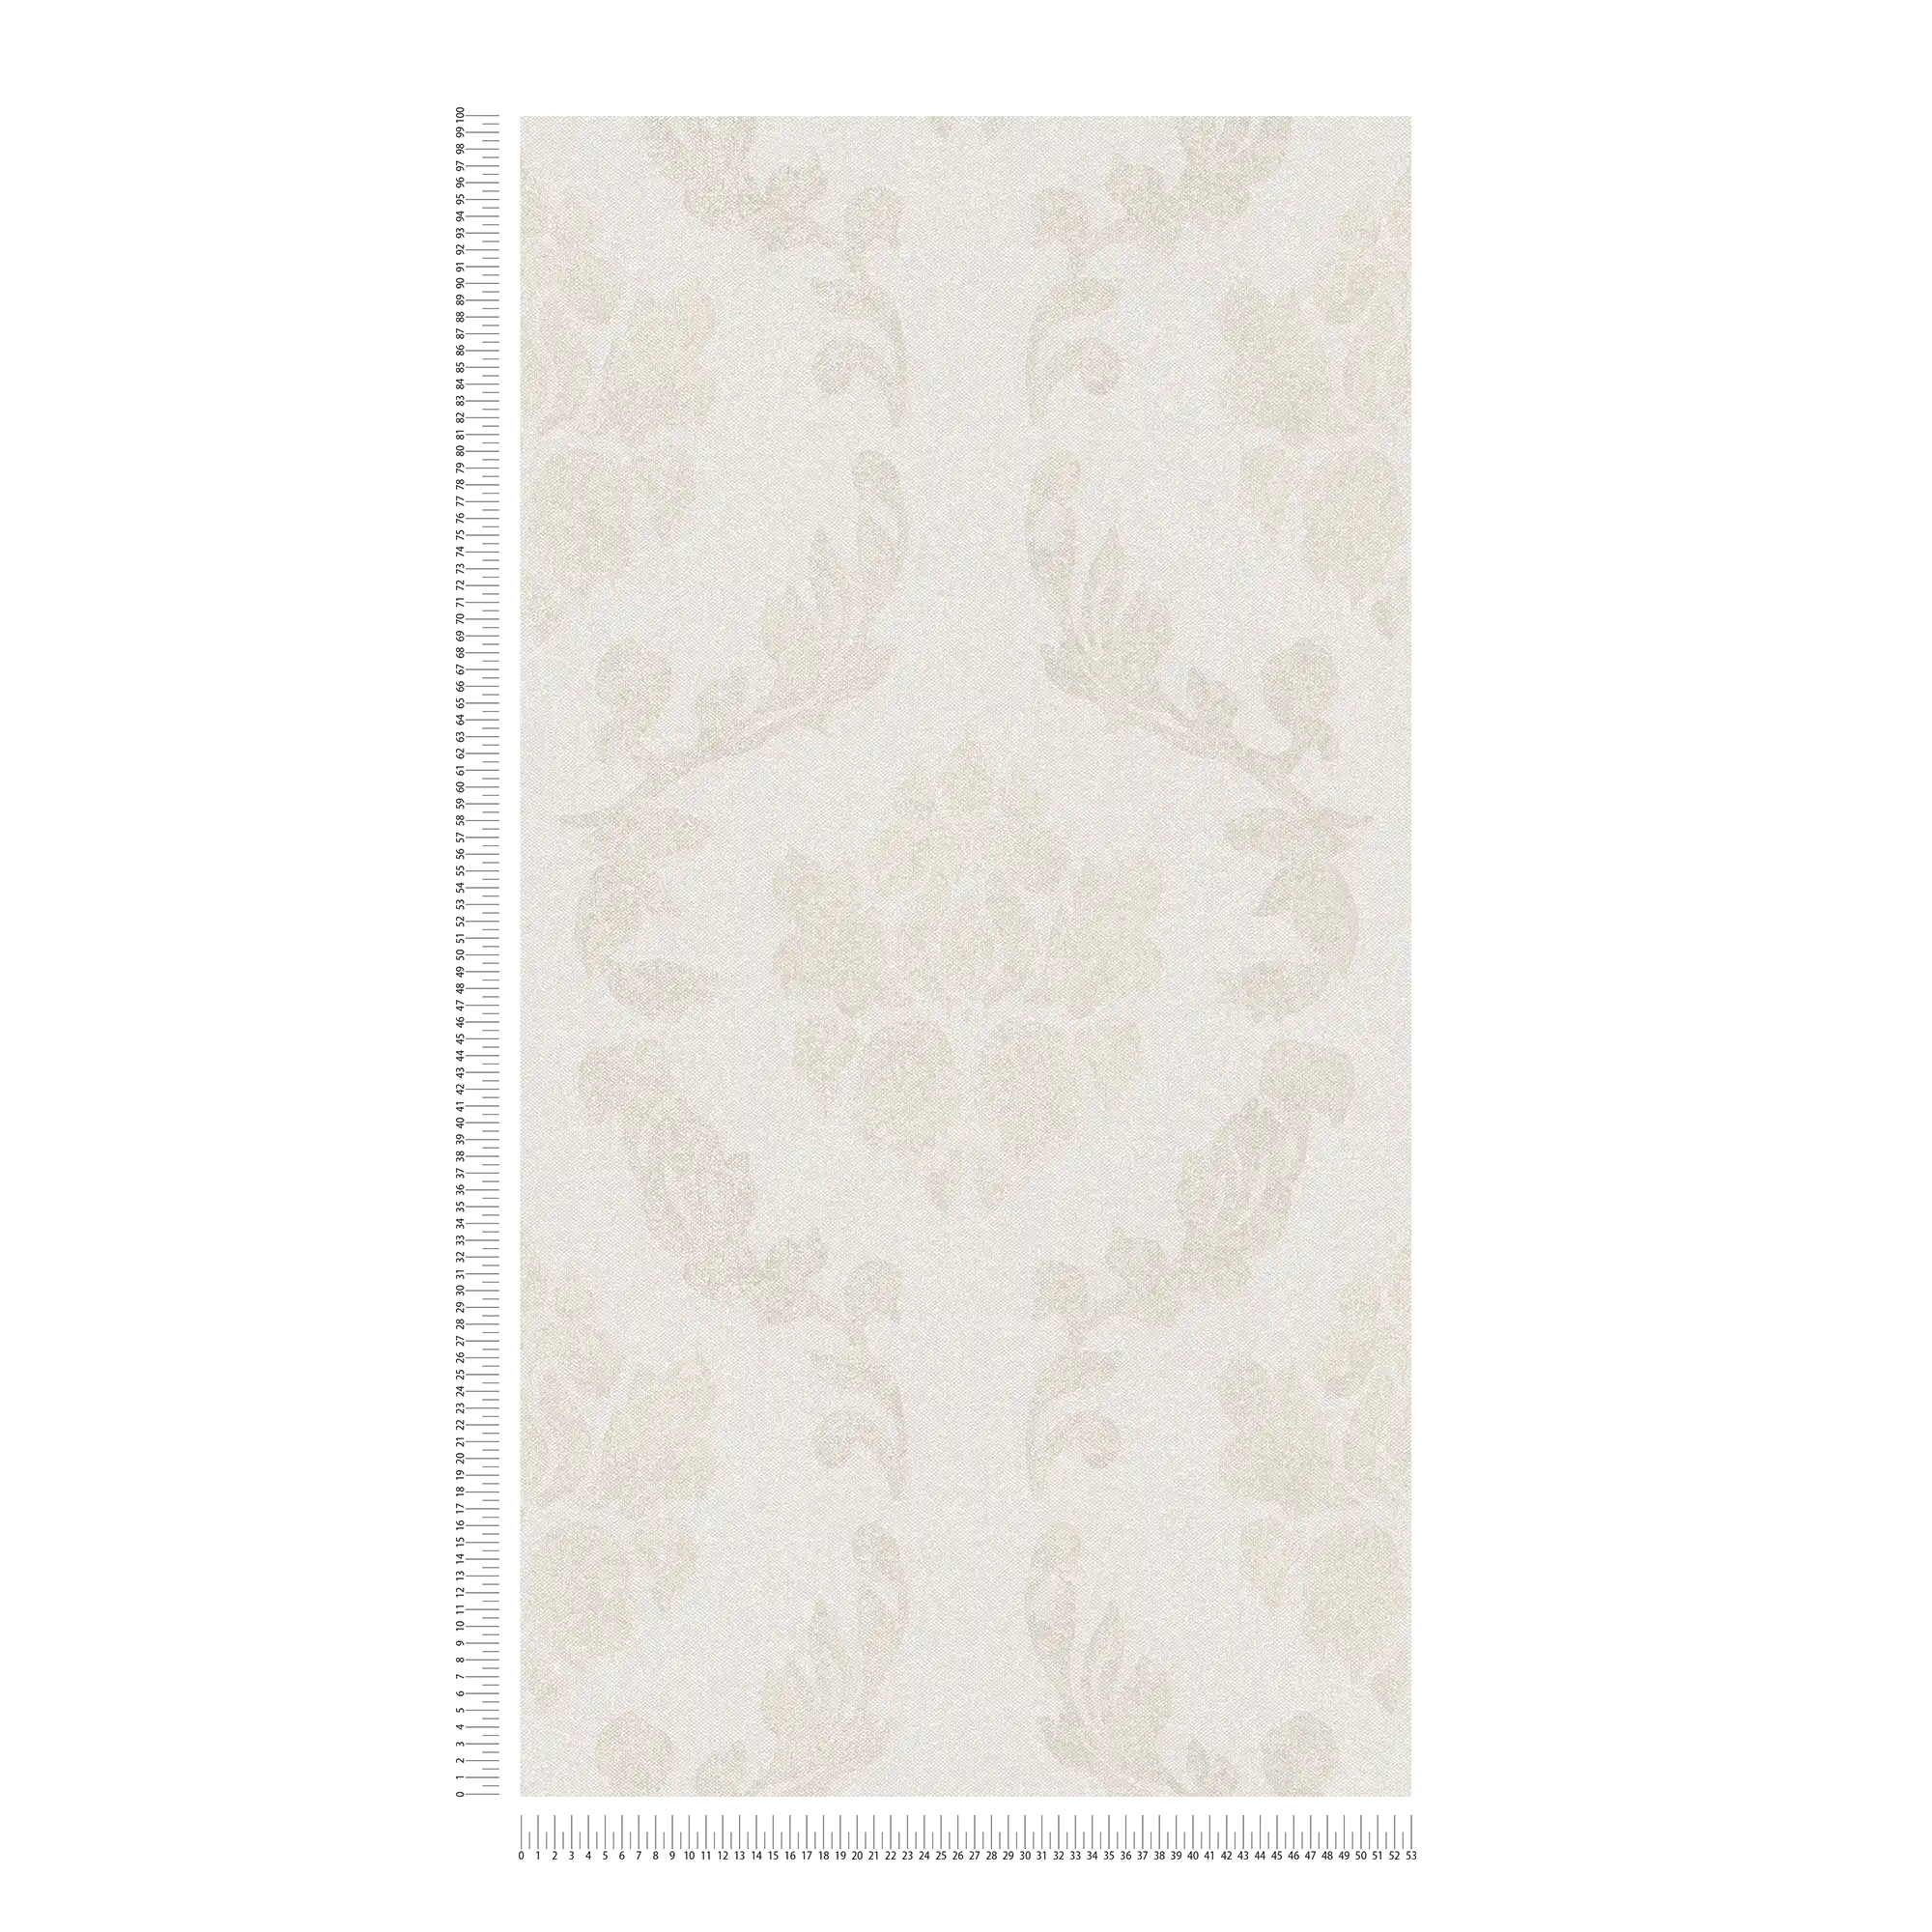             Papel pintado ornamental con aspecto de lino - crema, beige
        